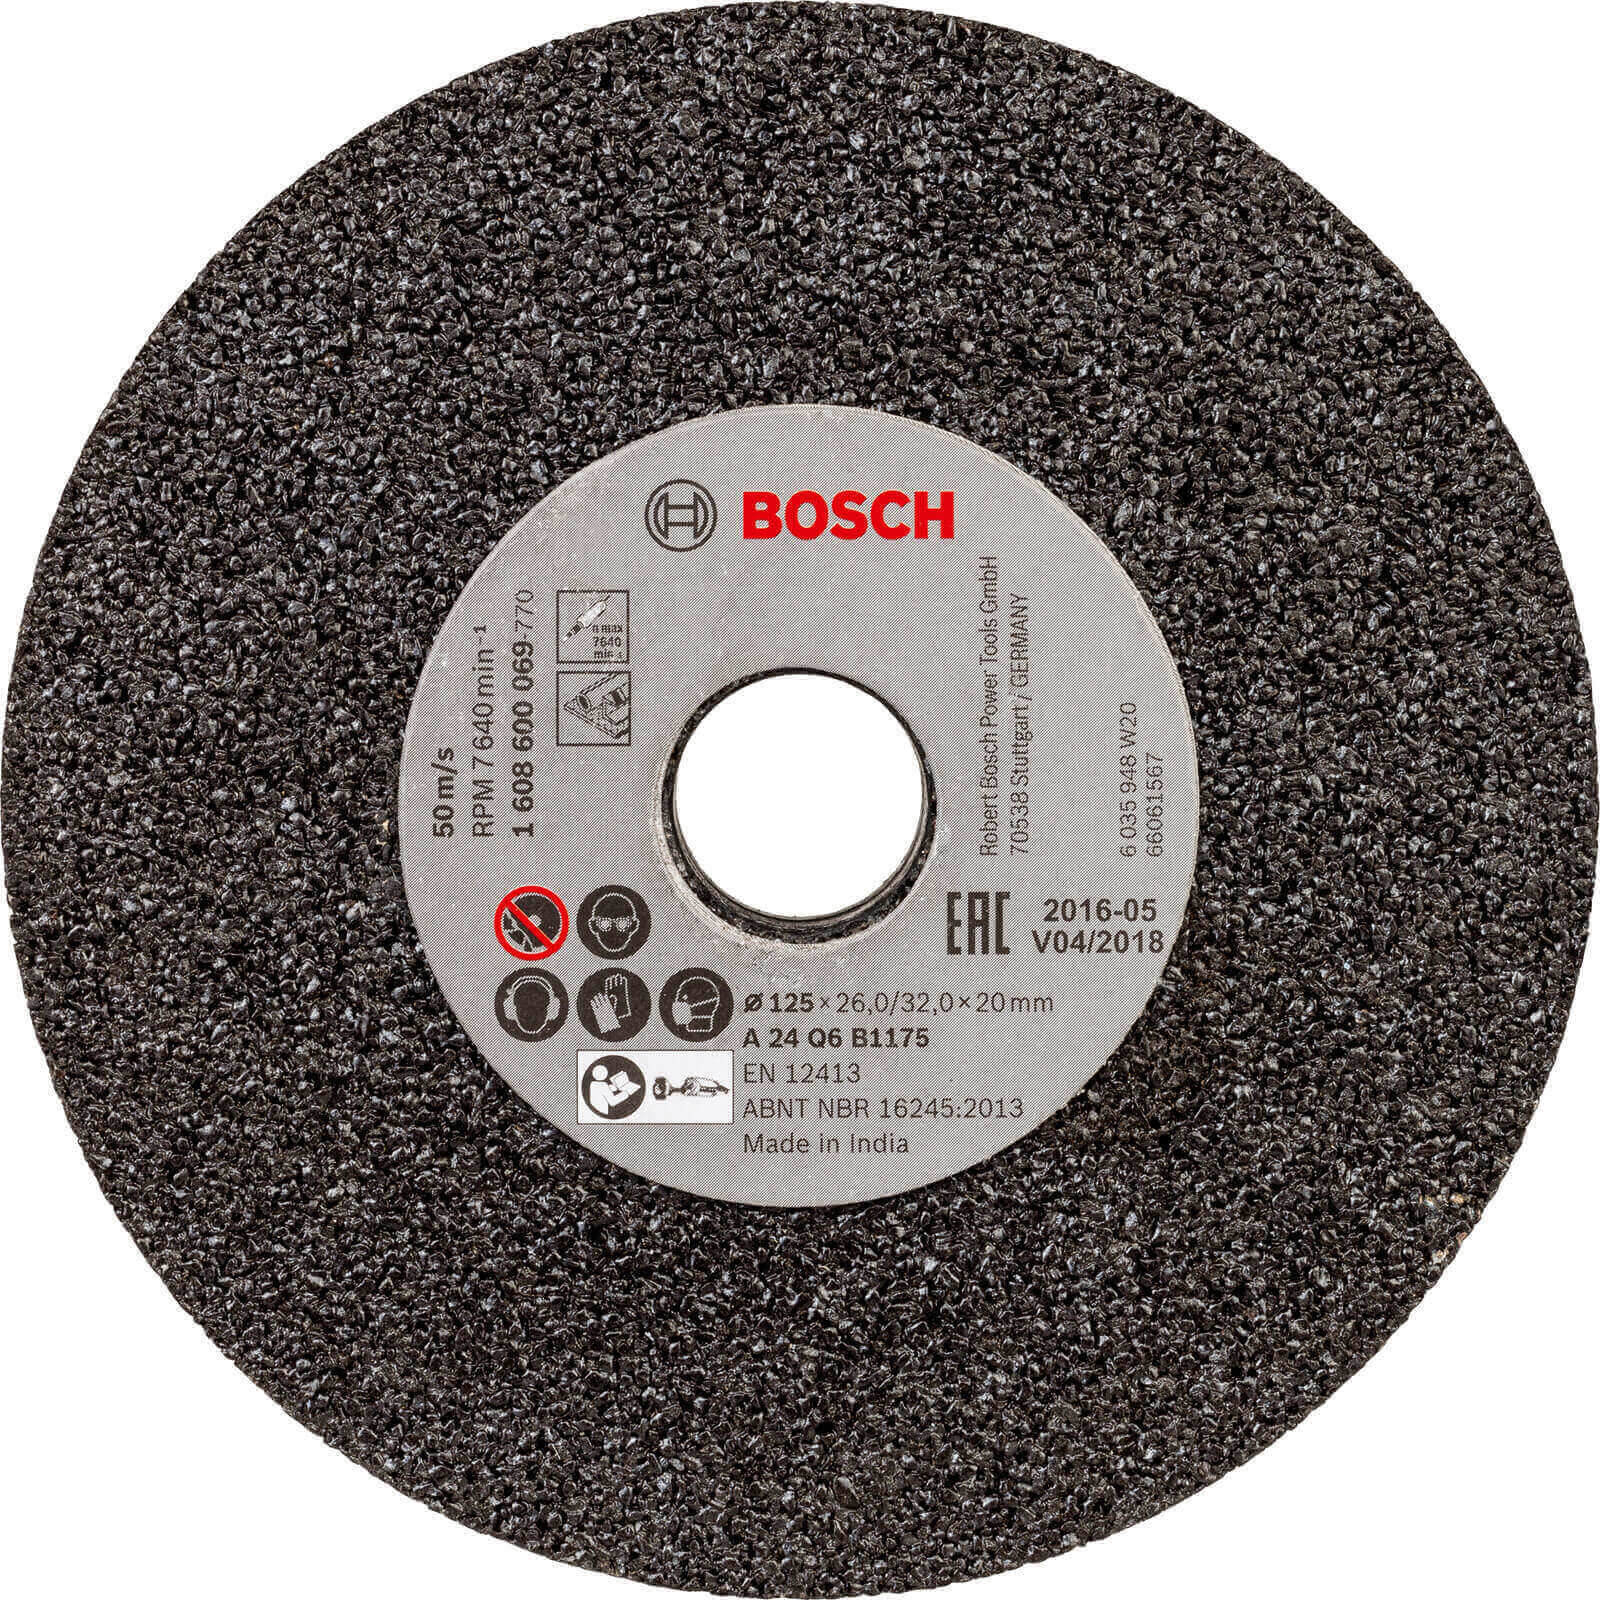 Photo of Bosch Bench Grinder Wheel 125mm 24g